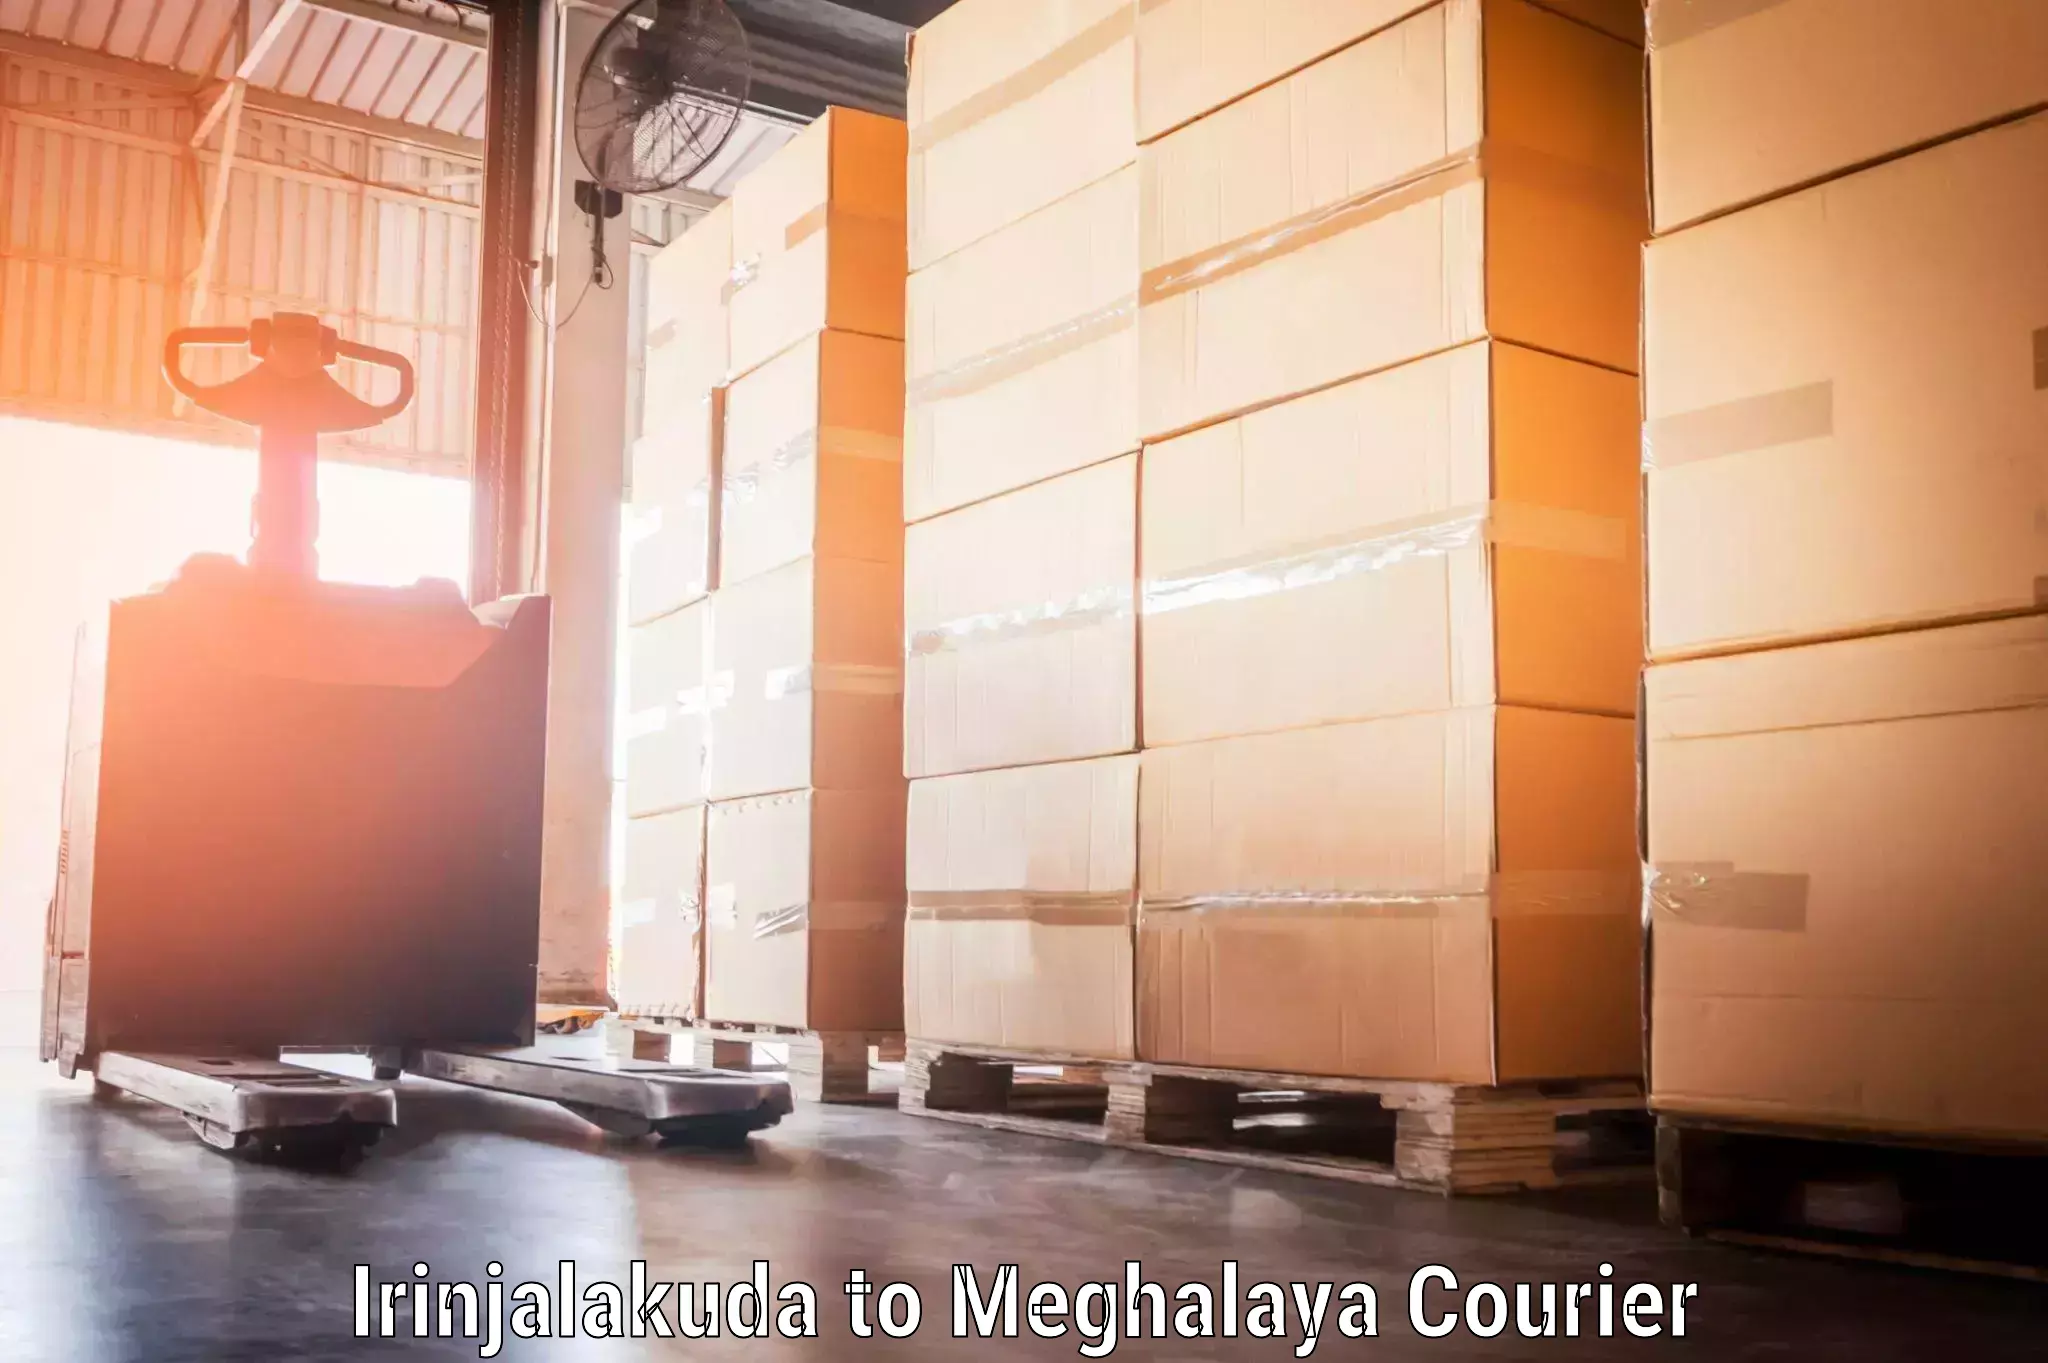 Baggage transport management Irinjalakuda to Meghalaya